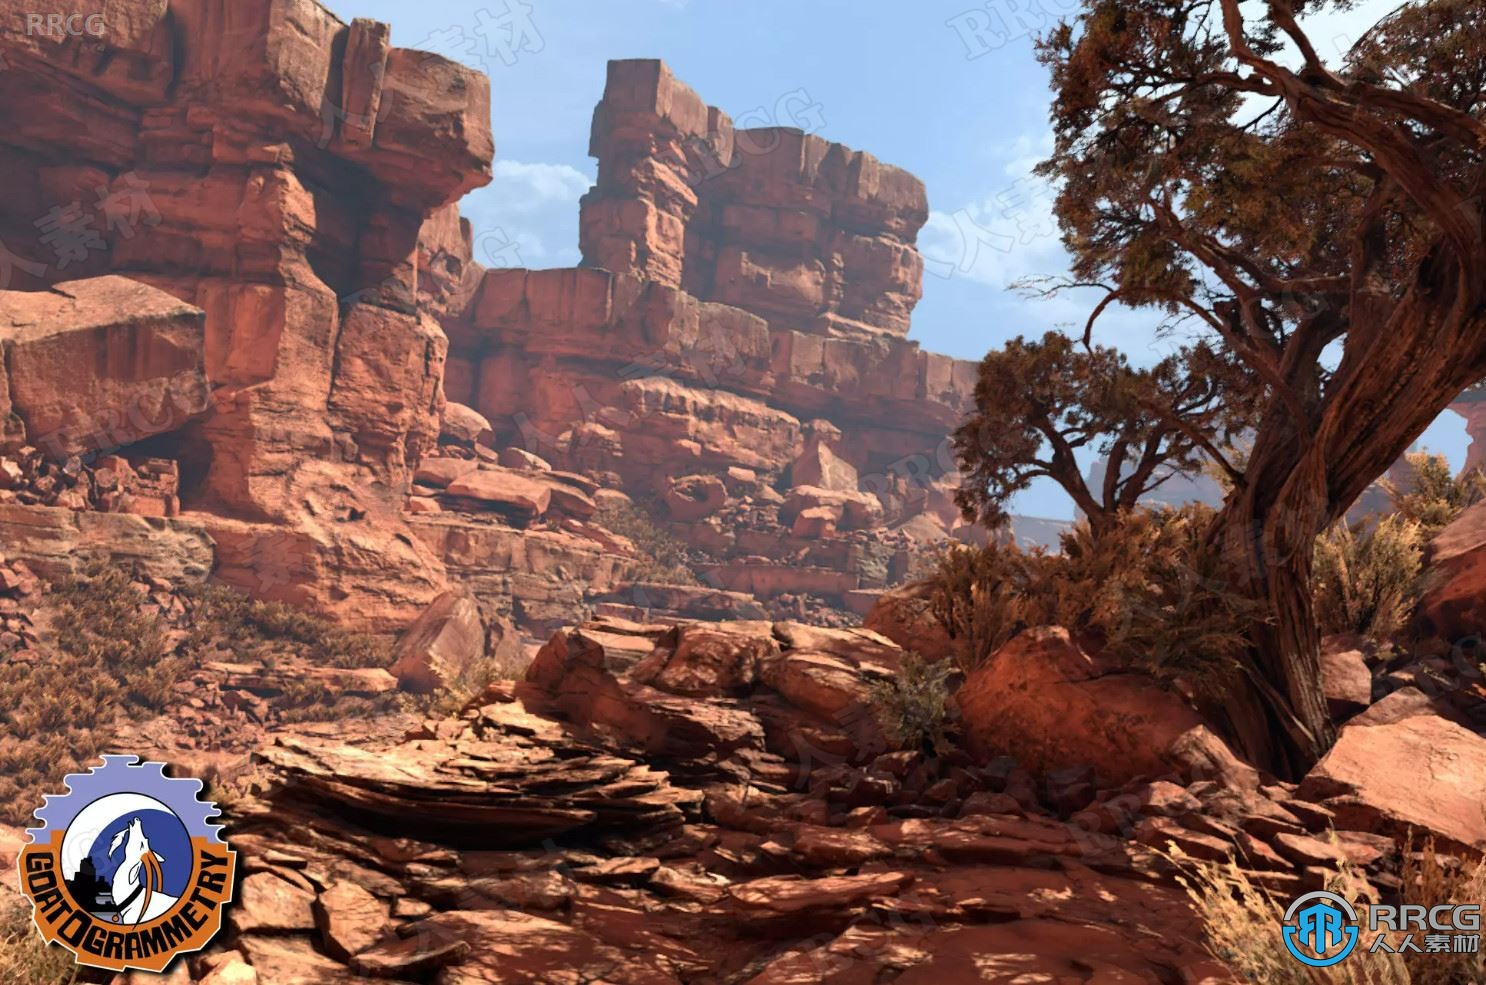 懸崖石塔巖脊峭壁自然環境Unity游戲素材資源